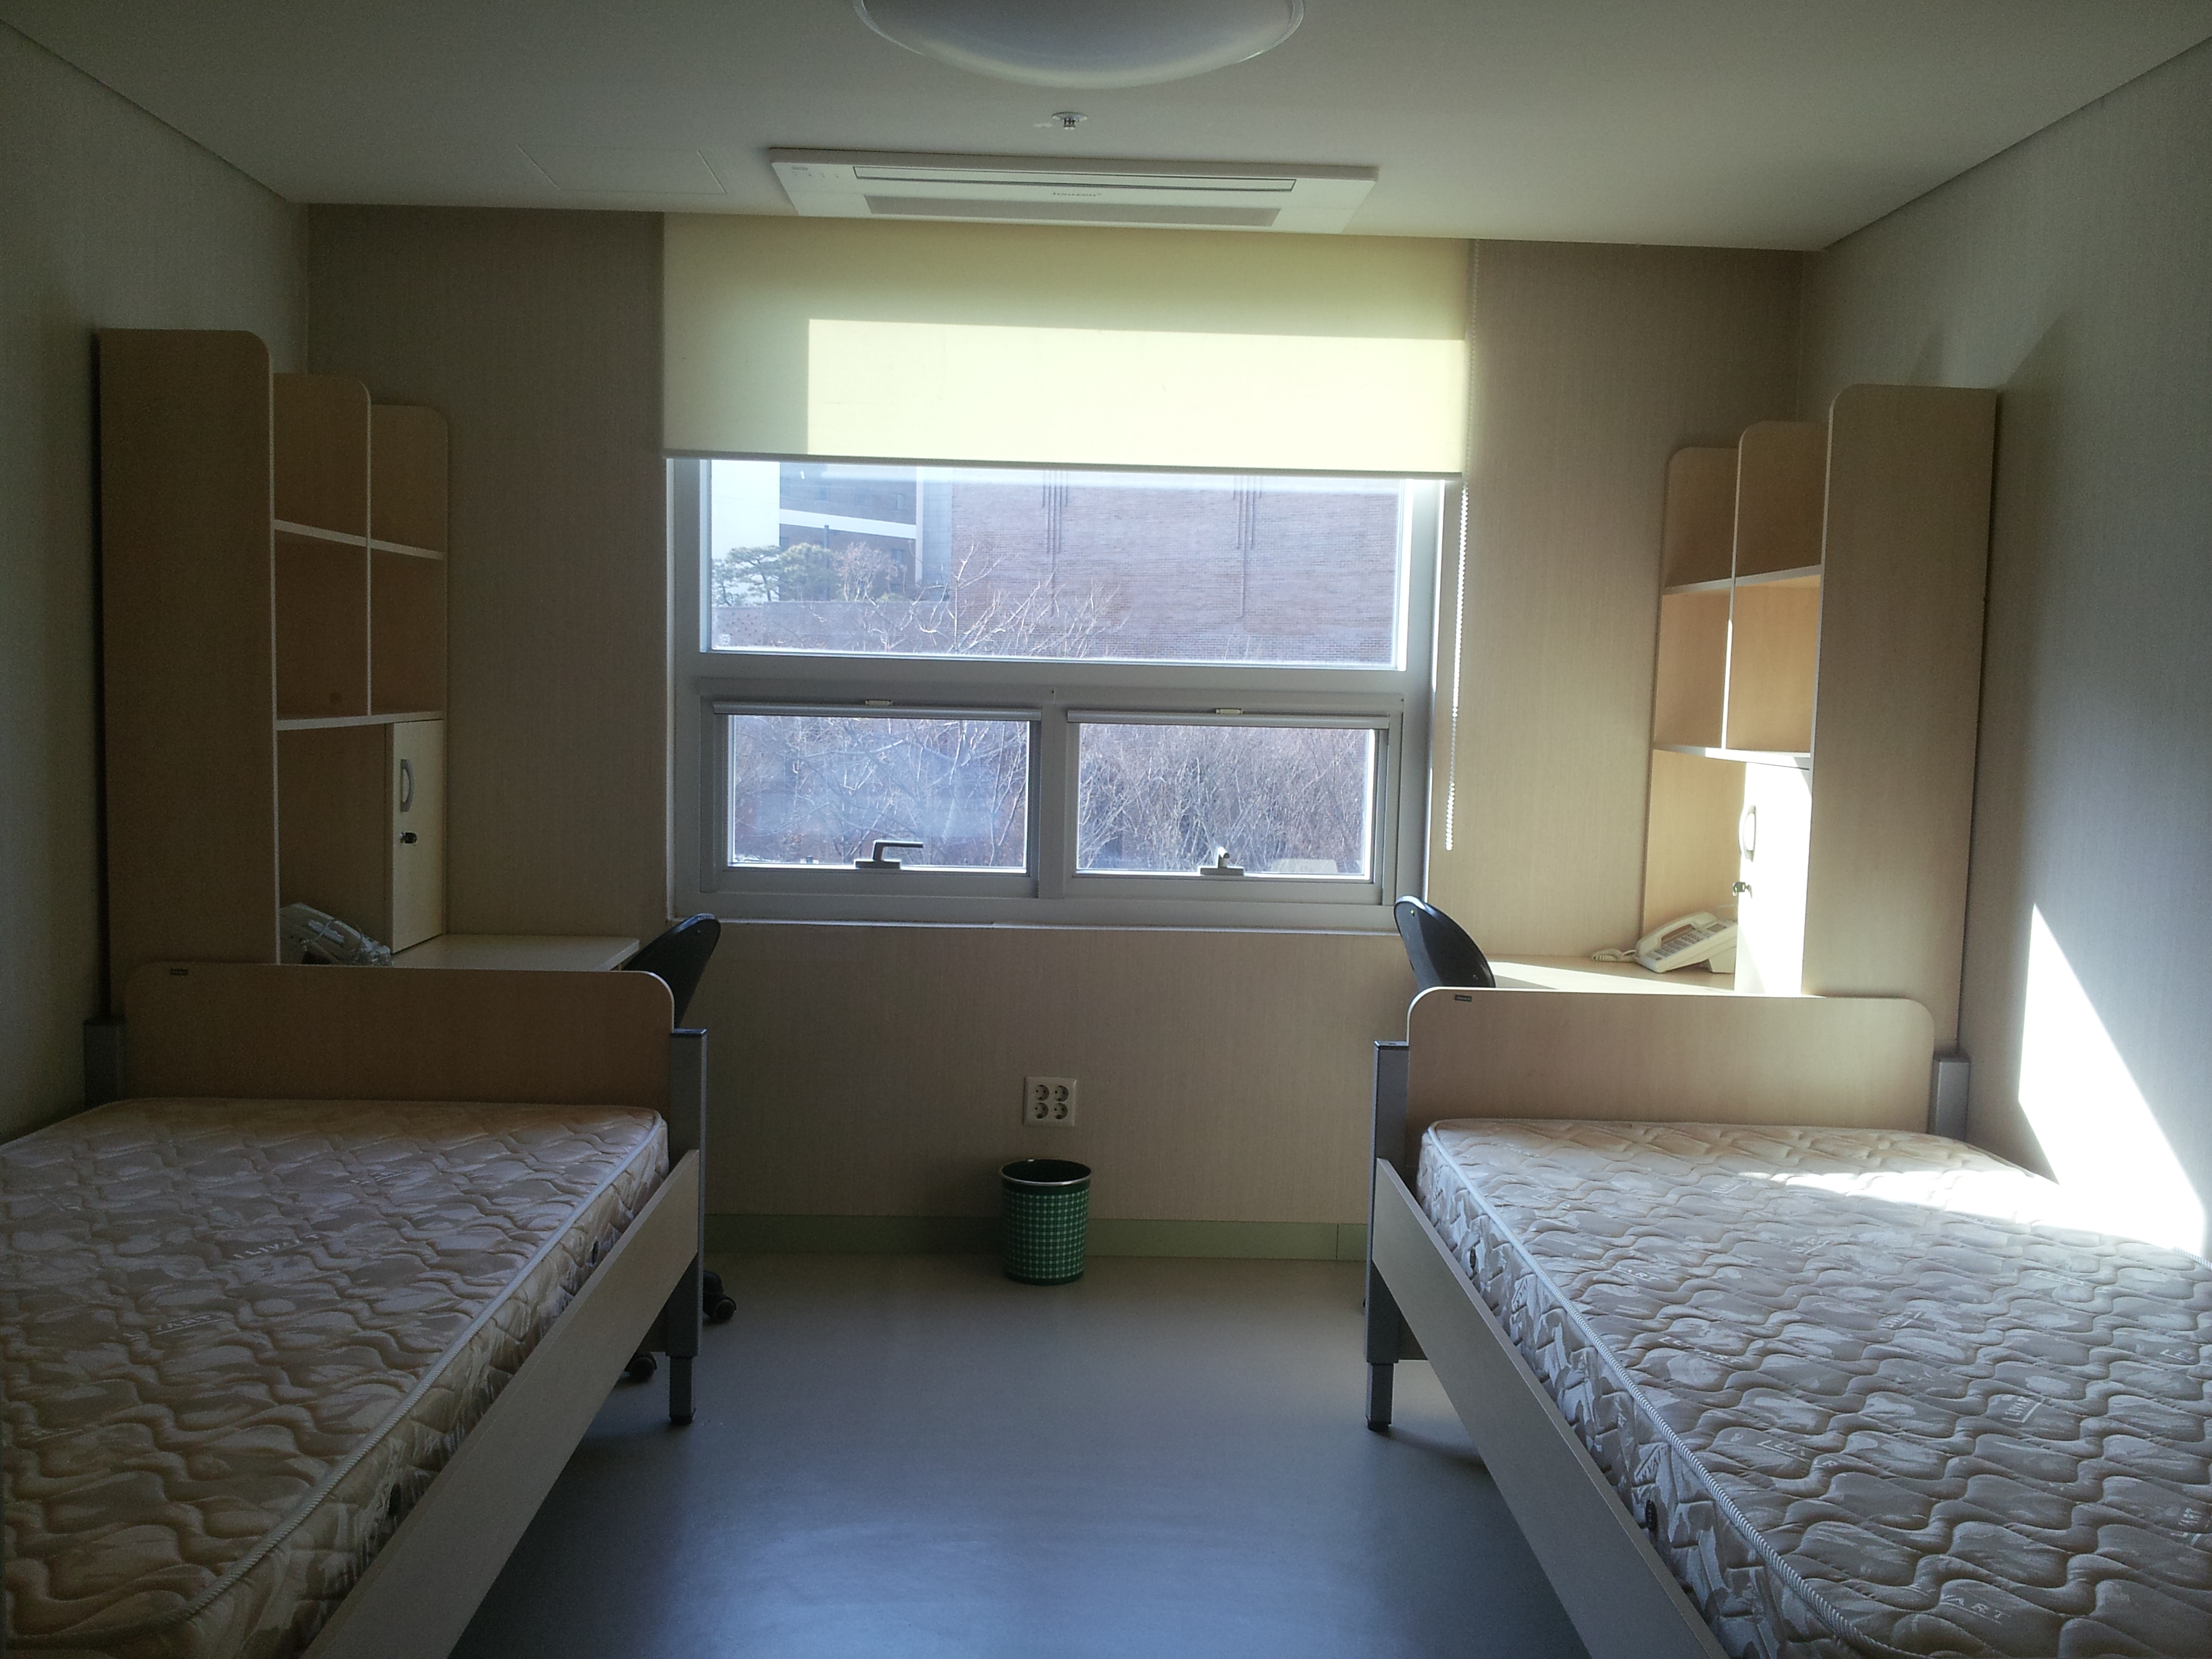 Обустроить комнату в студенческом общежитии